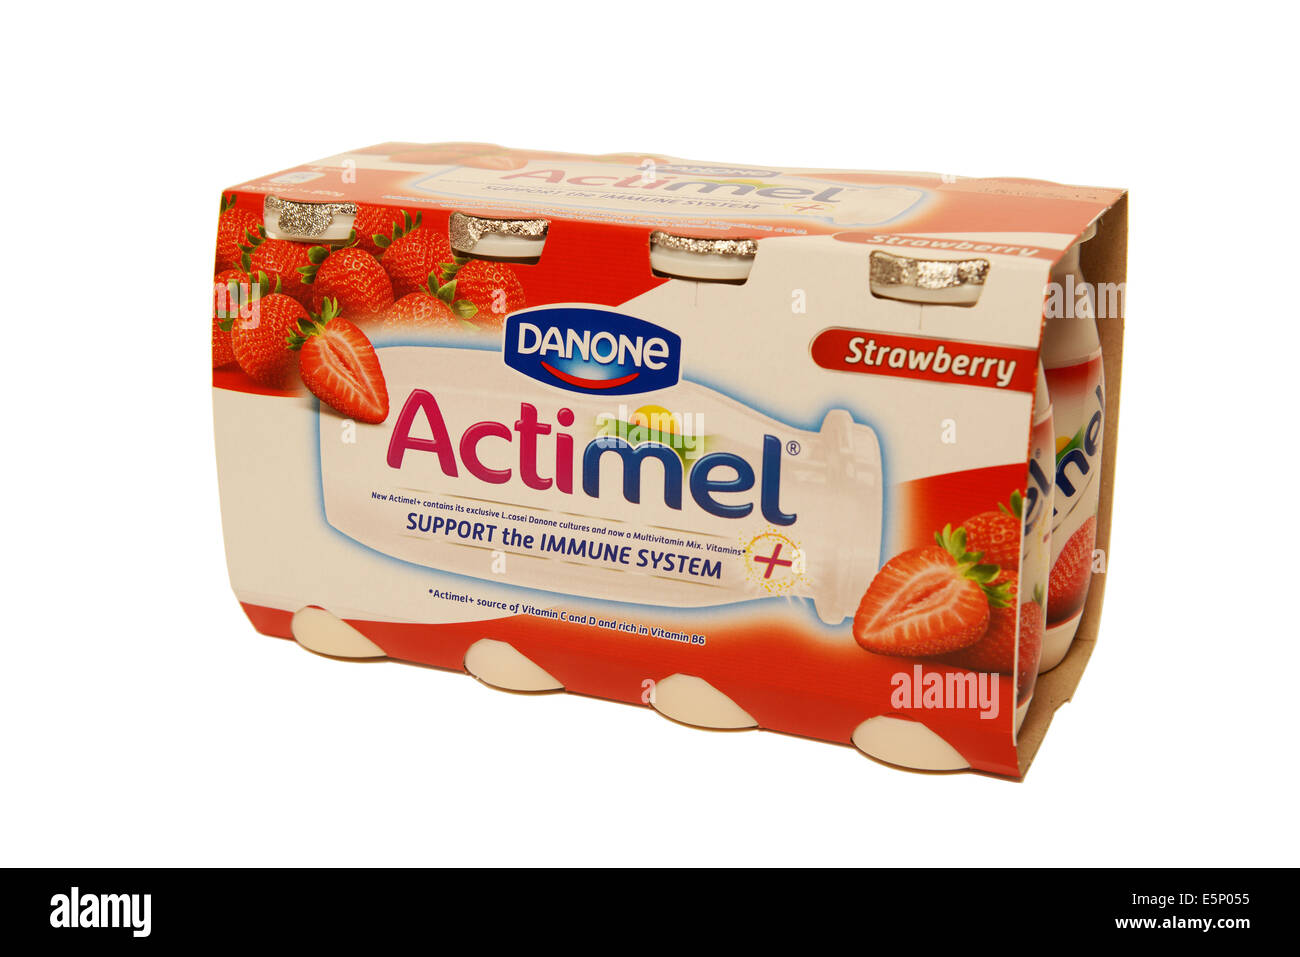 Actimel drinks - Danone